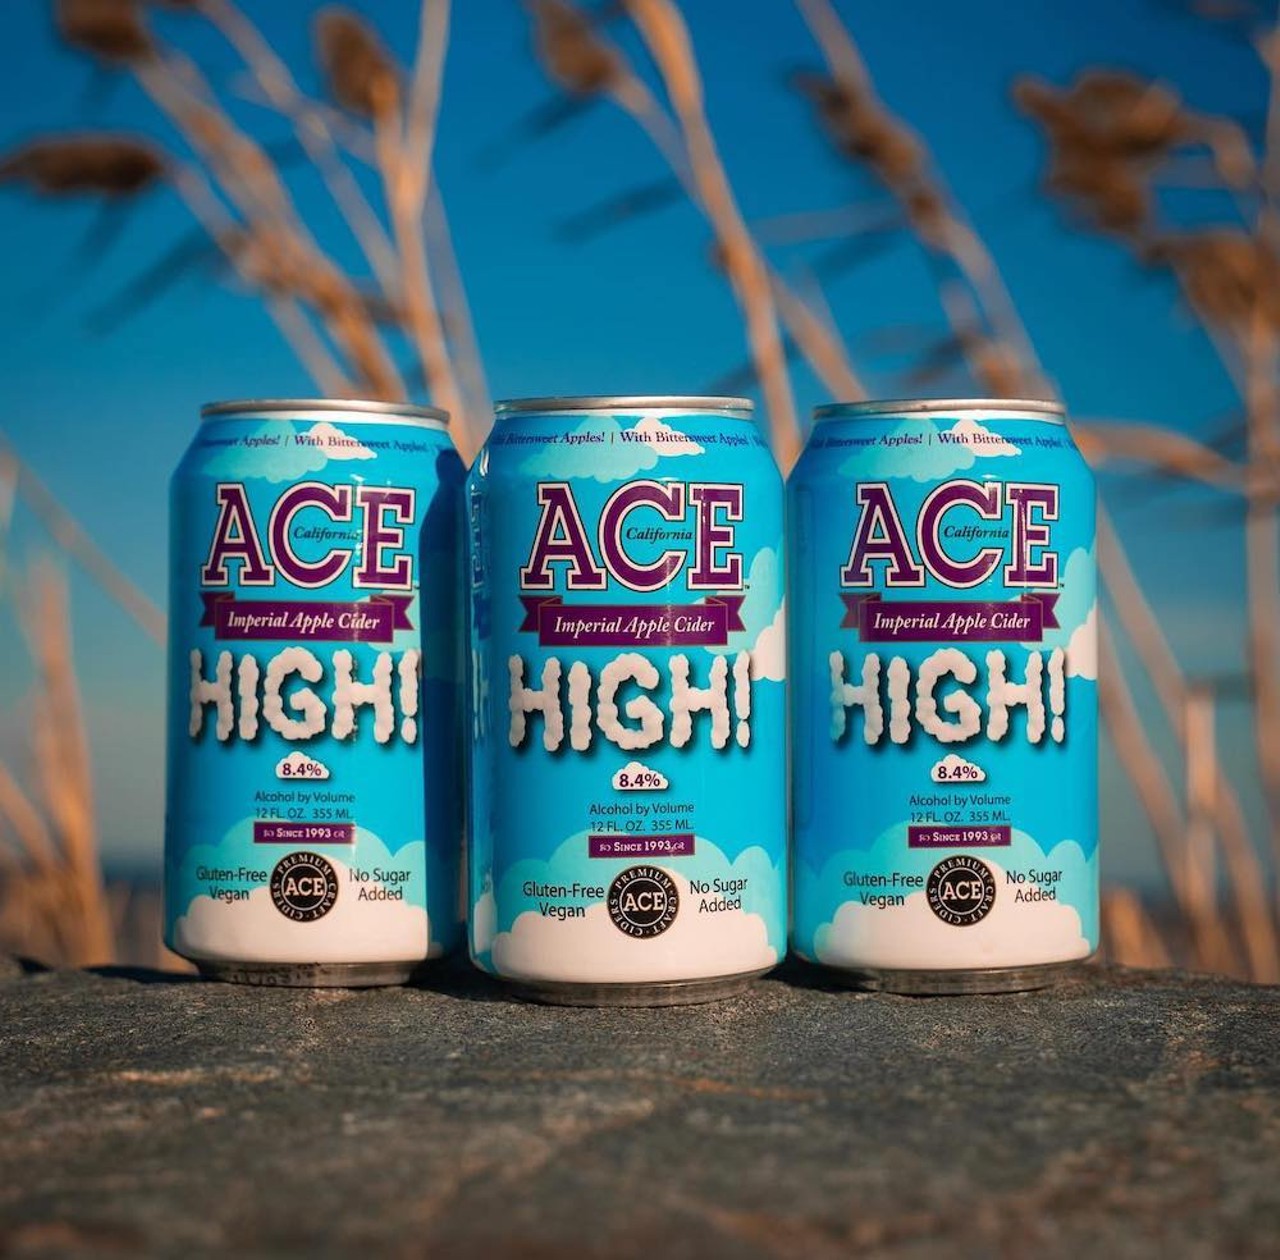 Ace Premium Craft Cider
High!